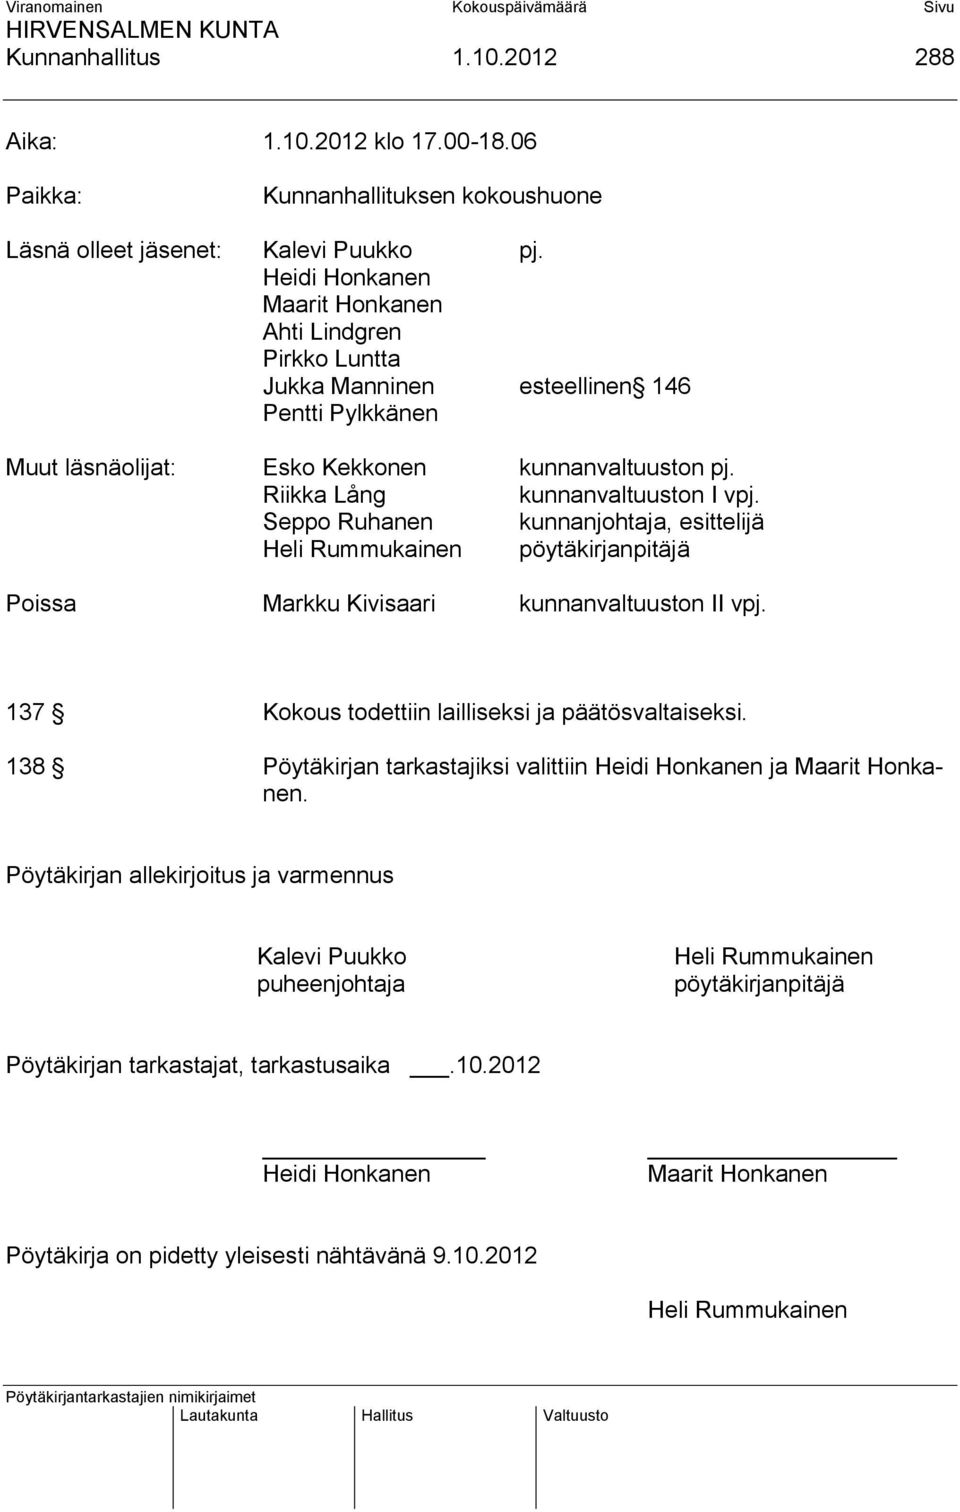 Seppo Ruhanen kunnanjohtaja, esittelijä Heli Rummukainen pöytäkirjanpitäjä Poissa Markku Kivisaari kunnanvaltuuston II vpj. 137 Kokous todettiin lailliseksi ja päätösvaltaiseksi.